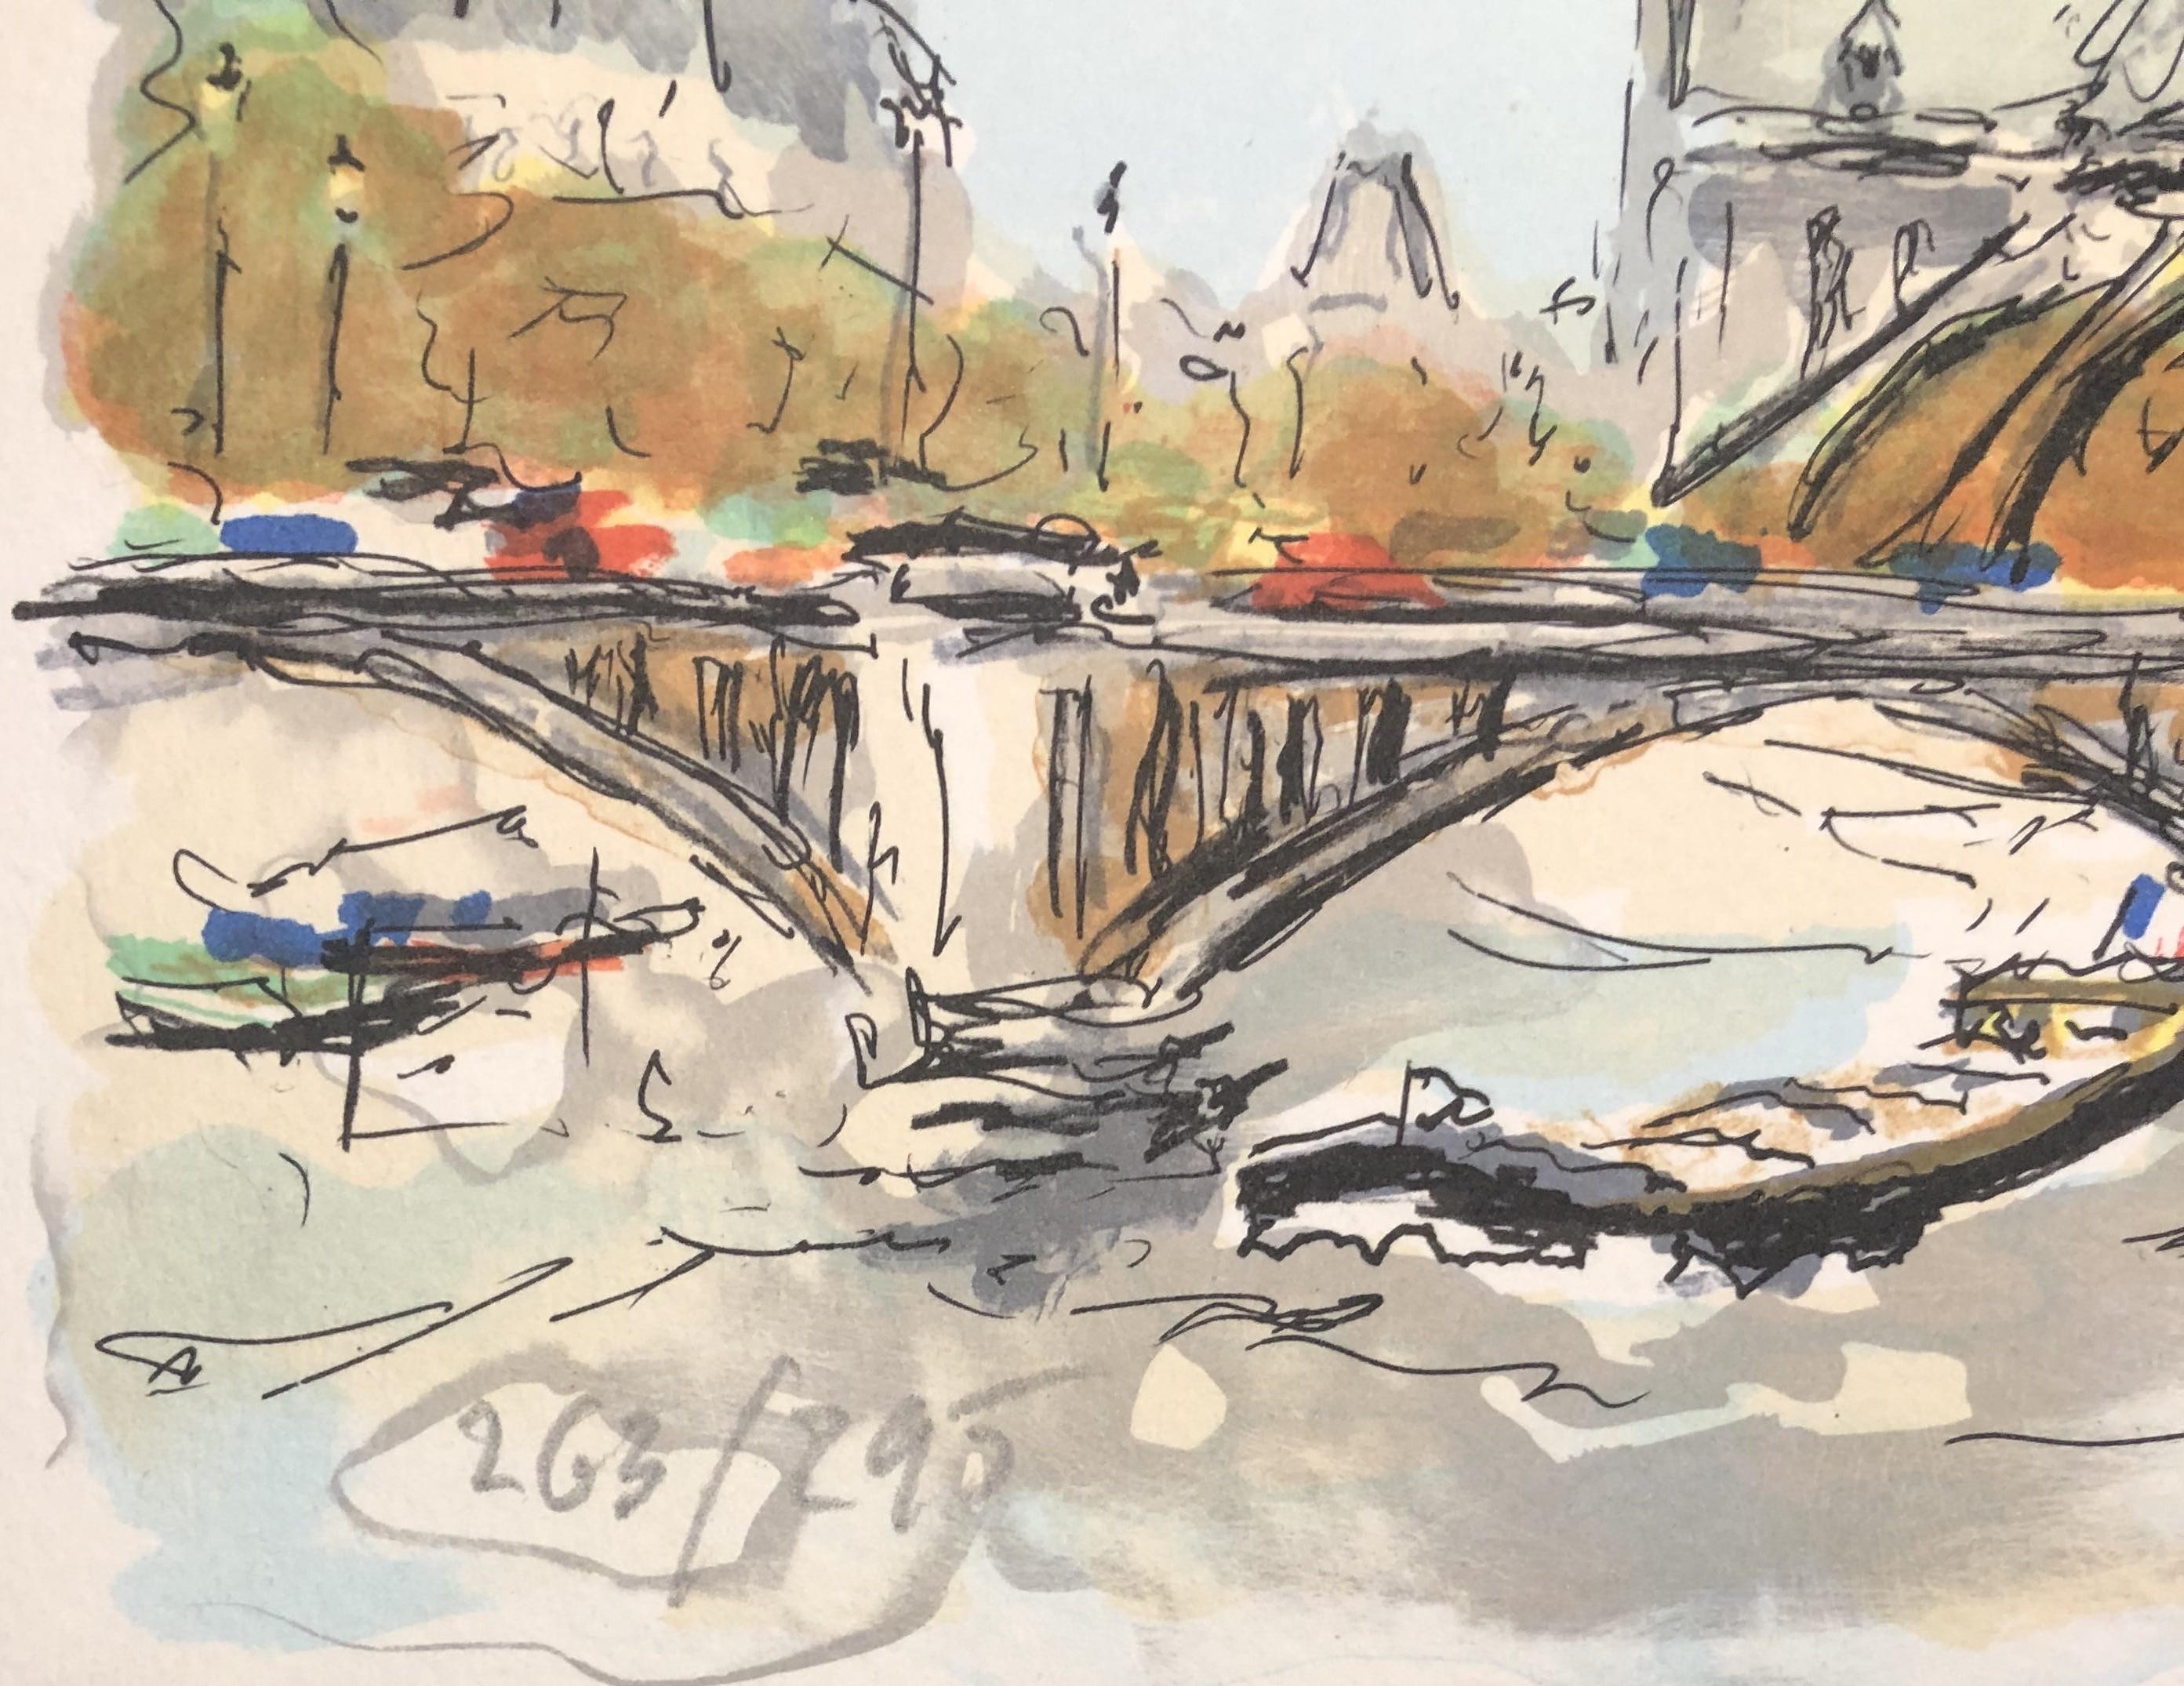 Paris, Notre Dame de Paris and Seine River - Original Lithograph Handsigned & N° - Beige Landscape Print by Urbain Huchet